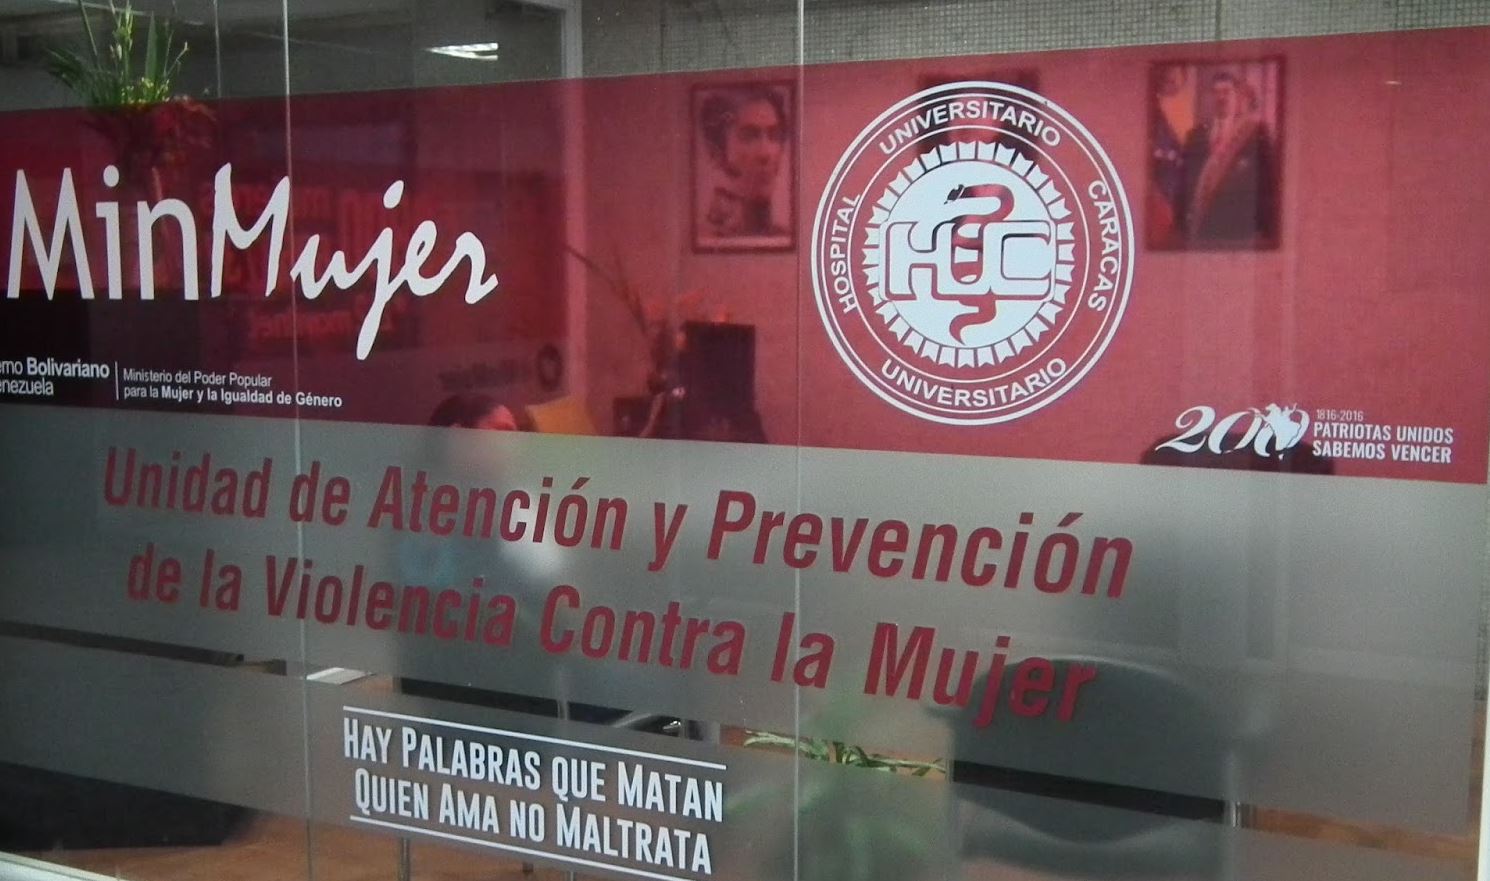 “Vamos a buscarle macho a todas”: José Vicente Rangel Ávalos e Inamujer con una campaña misógina (VIDEO)